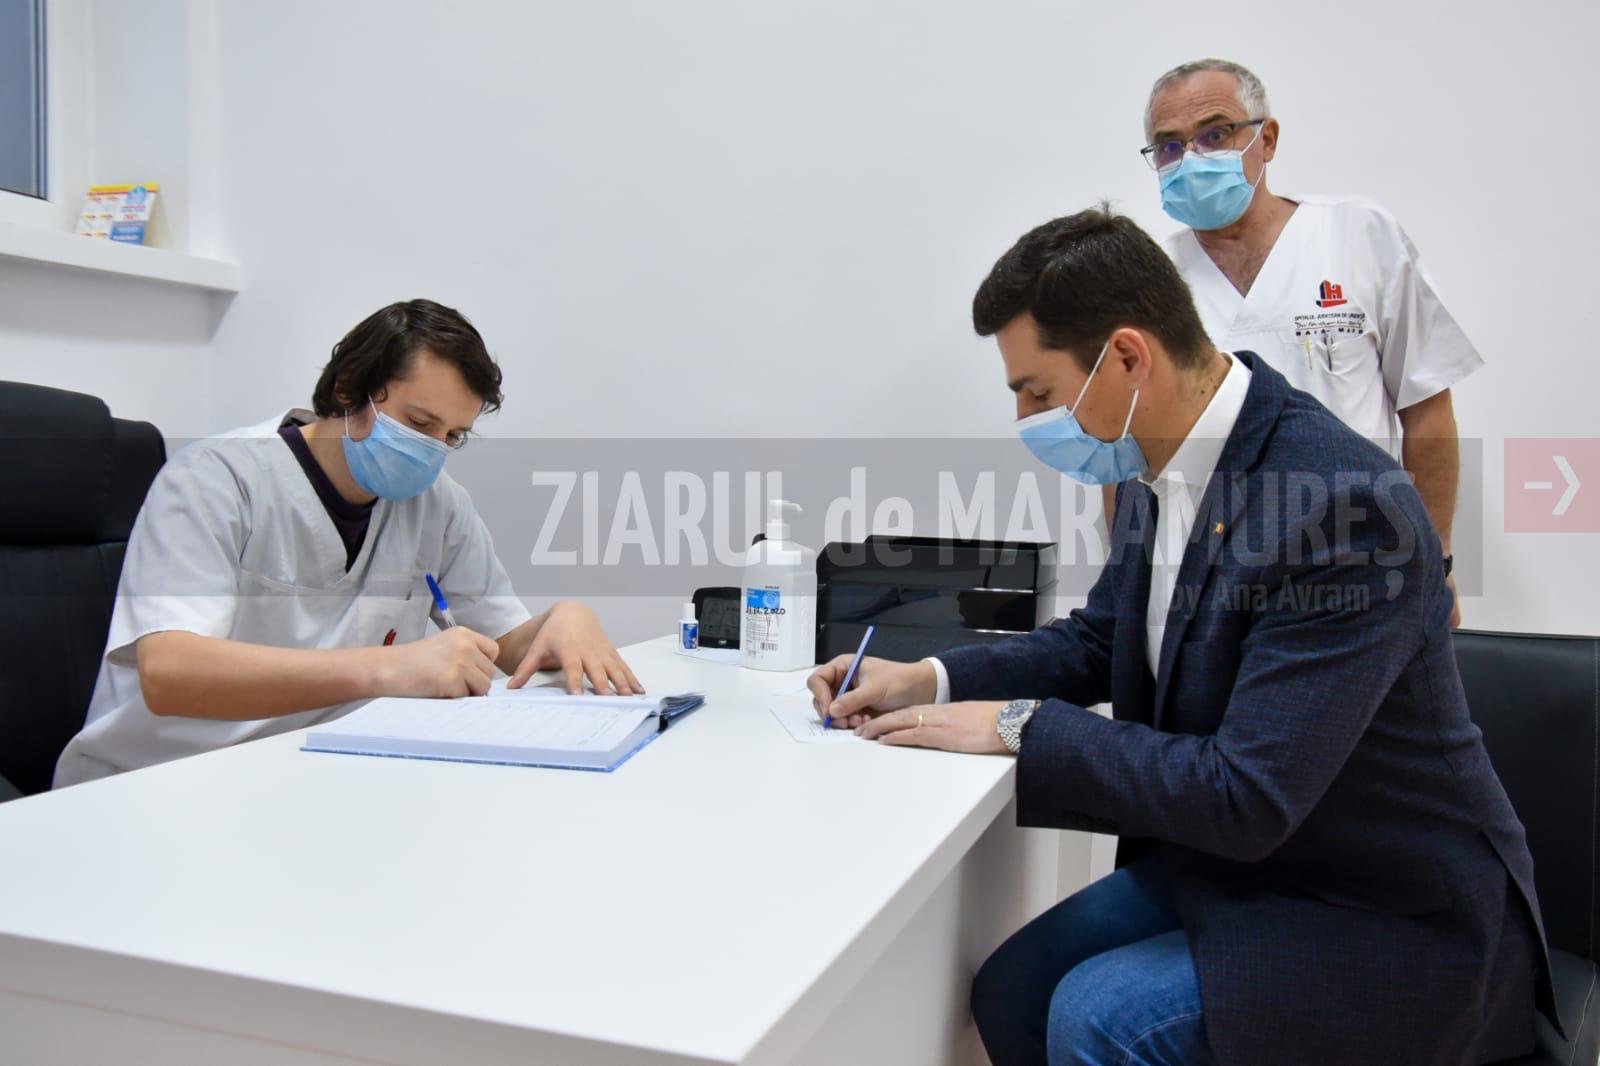 Președintele Consiliului Județean Maramureș, Ionel Bogdan s-a vaccinat împotriva COVID-19